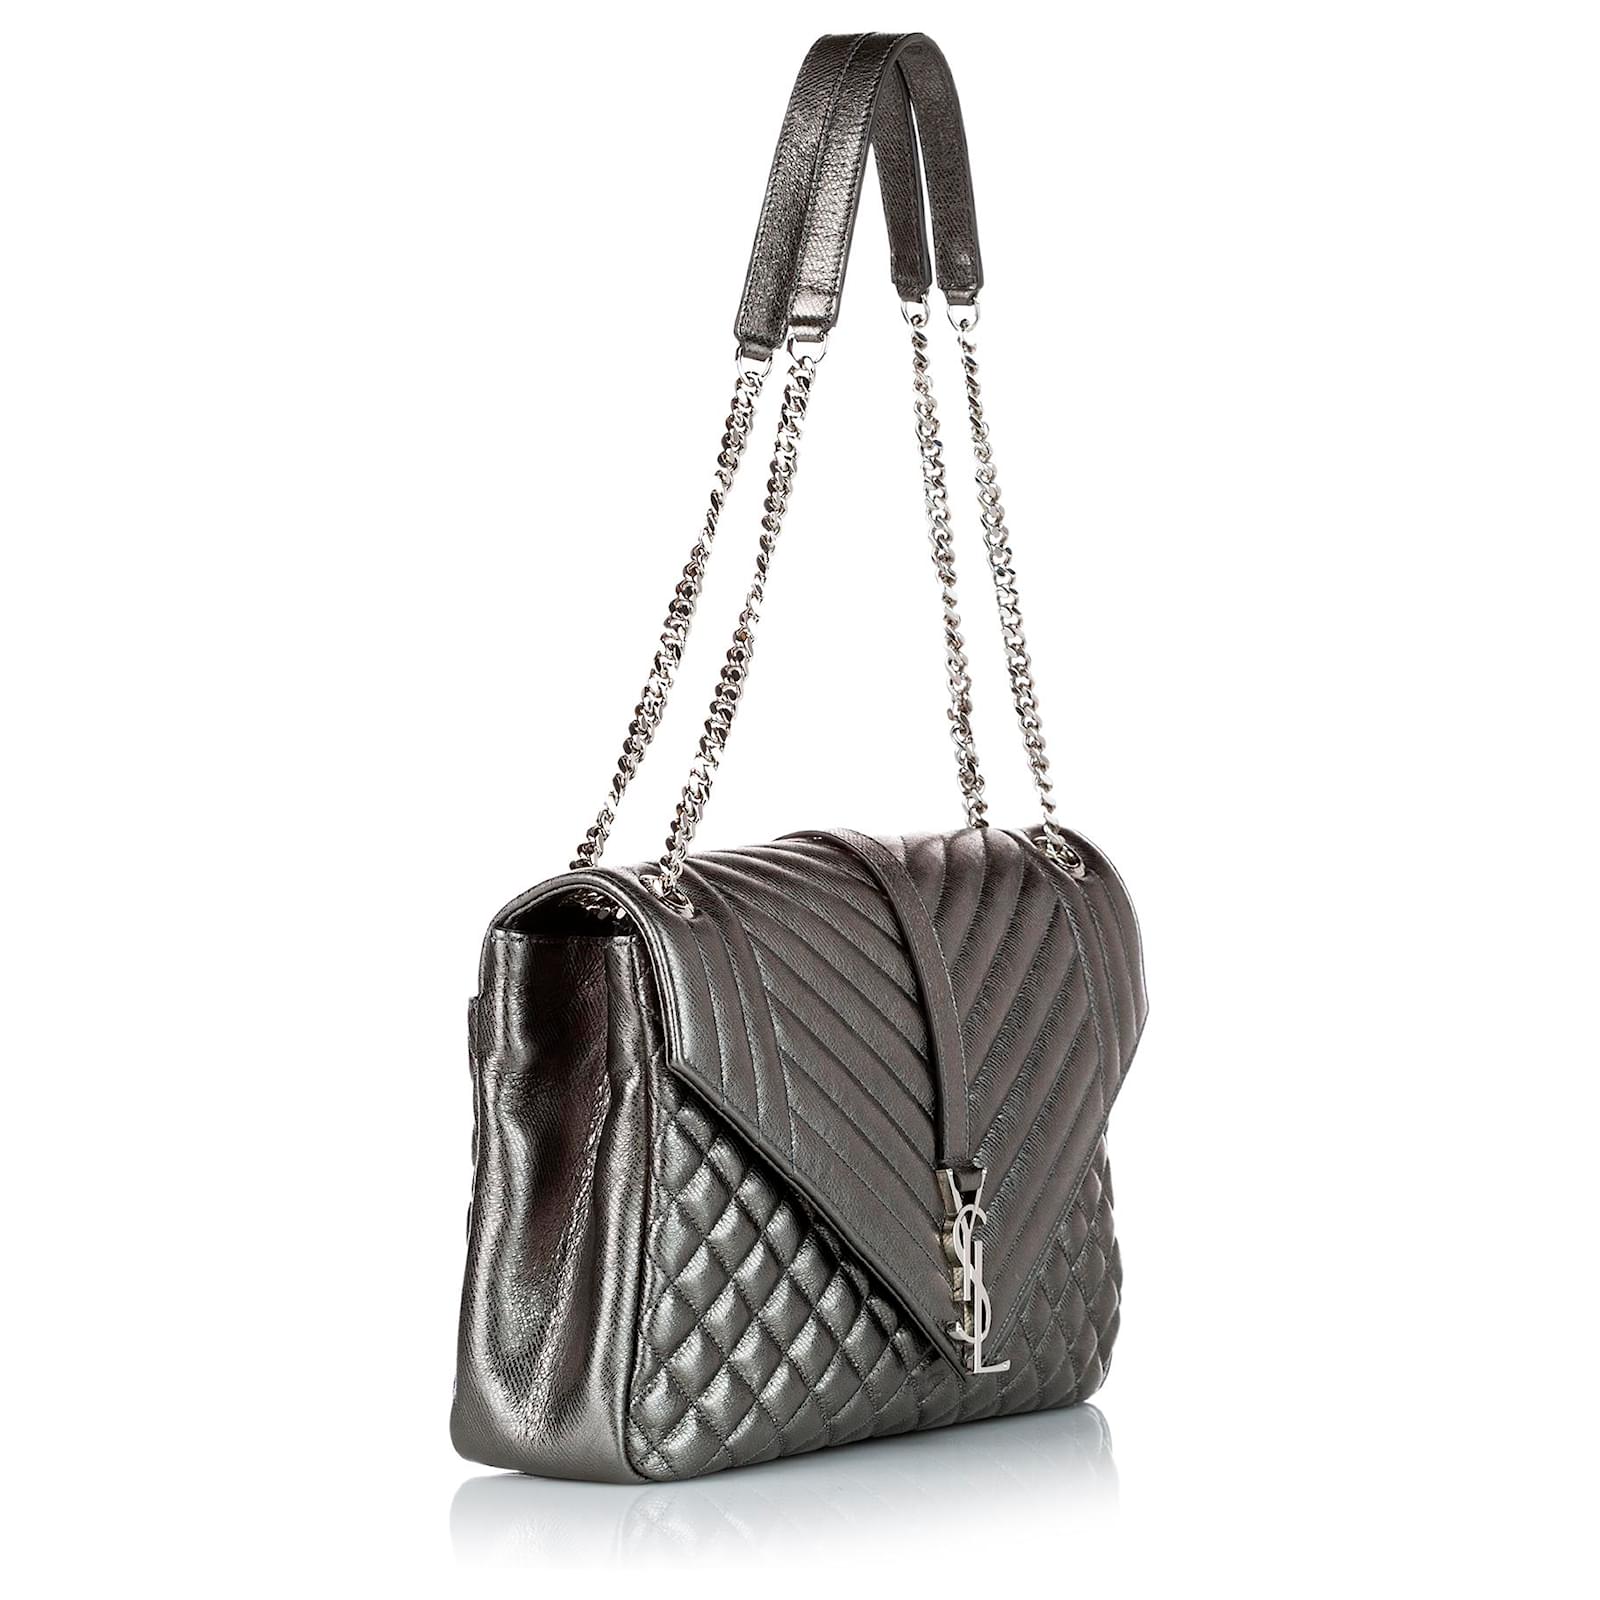 Givenchy Pandora Shoulder bag 359970, ysl envelope bag review and size  guide